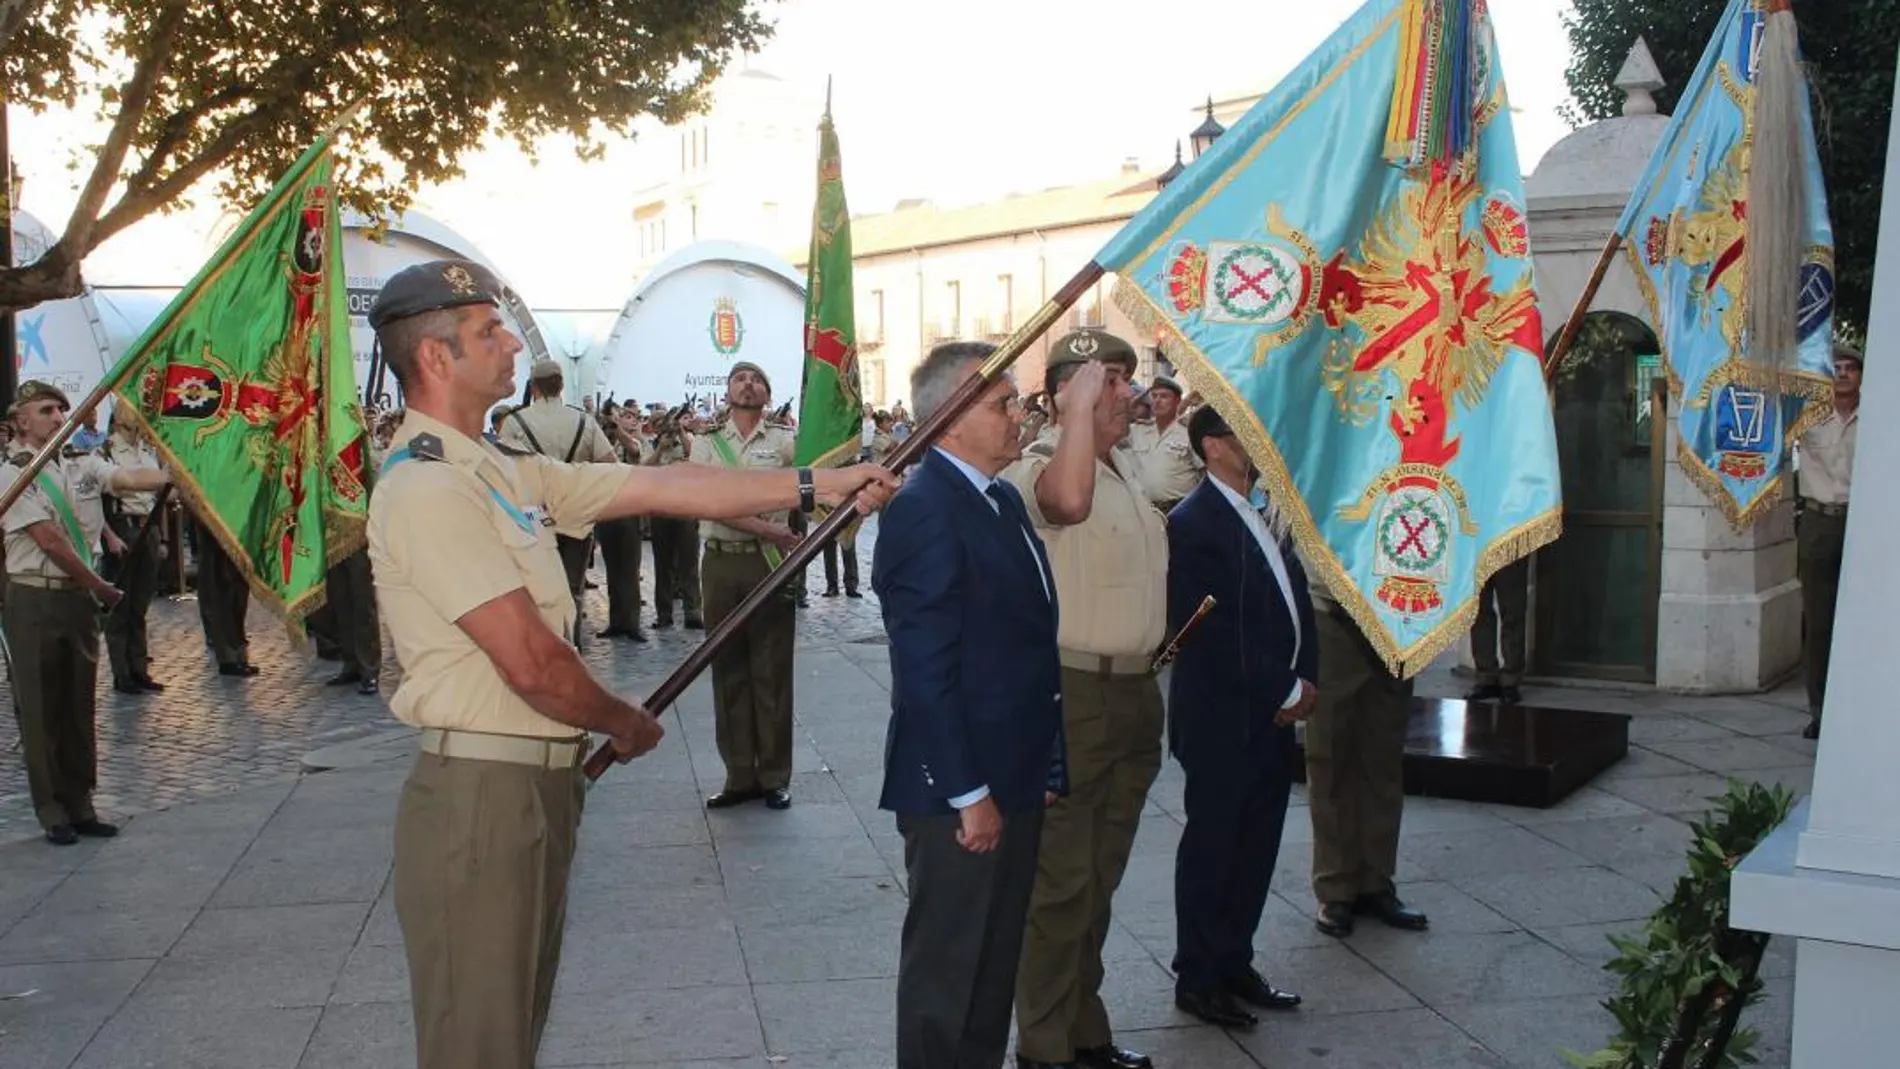 Arriado Solemne de la Bandera Española en el Palacio Real de Valladolid